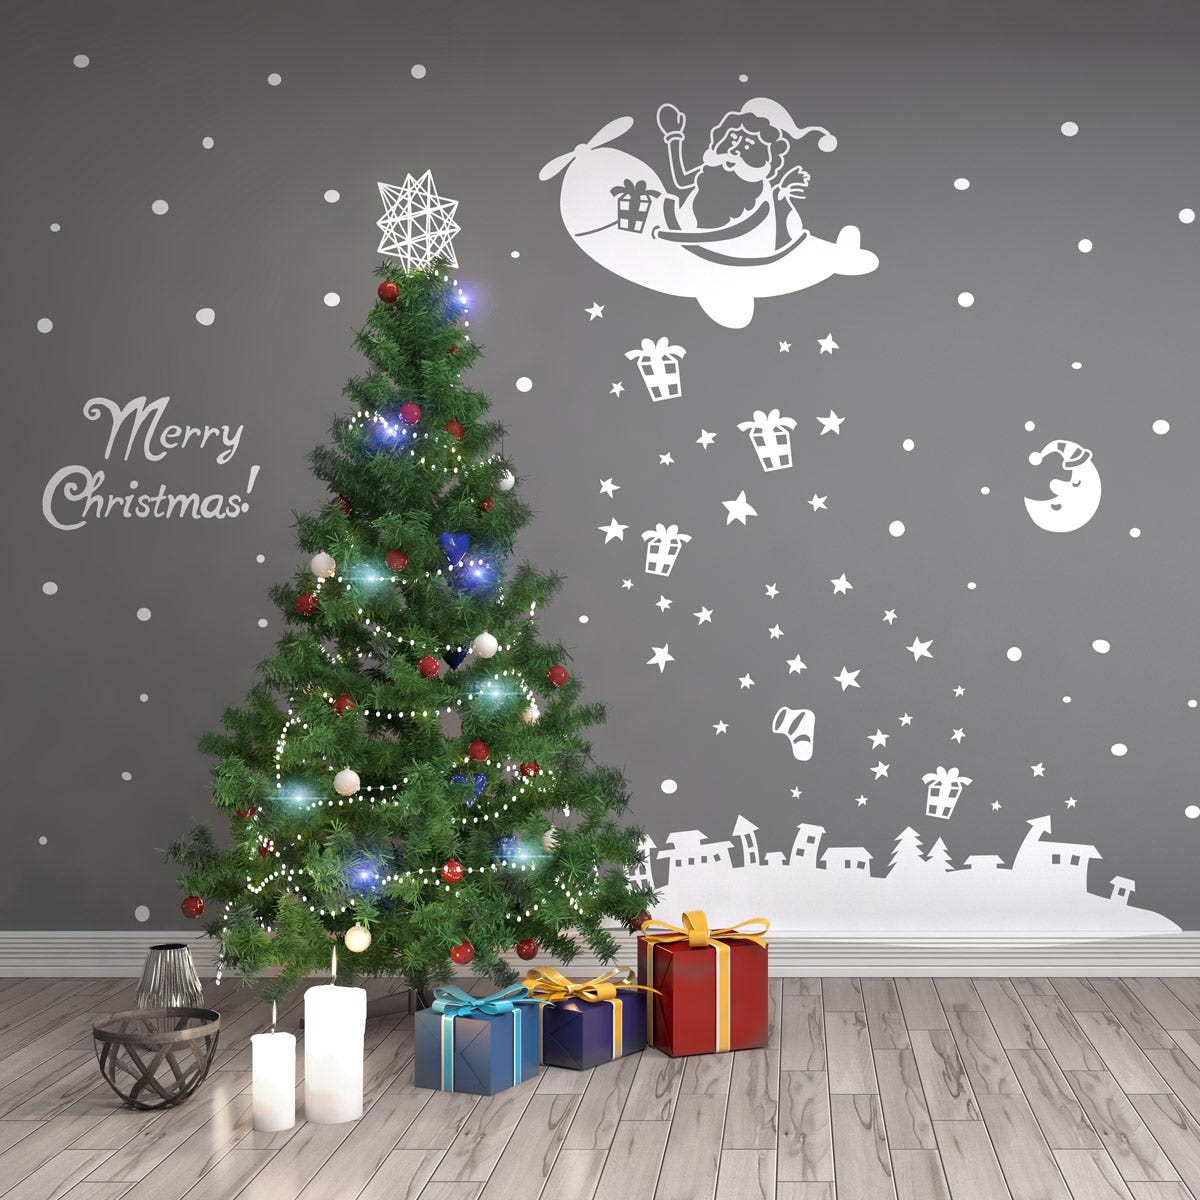 Sticker Ambiance merry christmas - 145x95cm - blanc - Autocollants adhésifs  noël - décoration fêtes